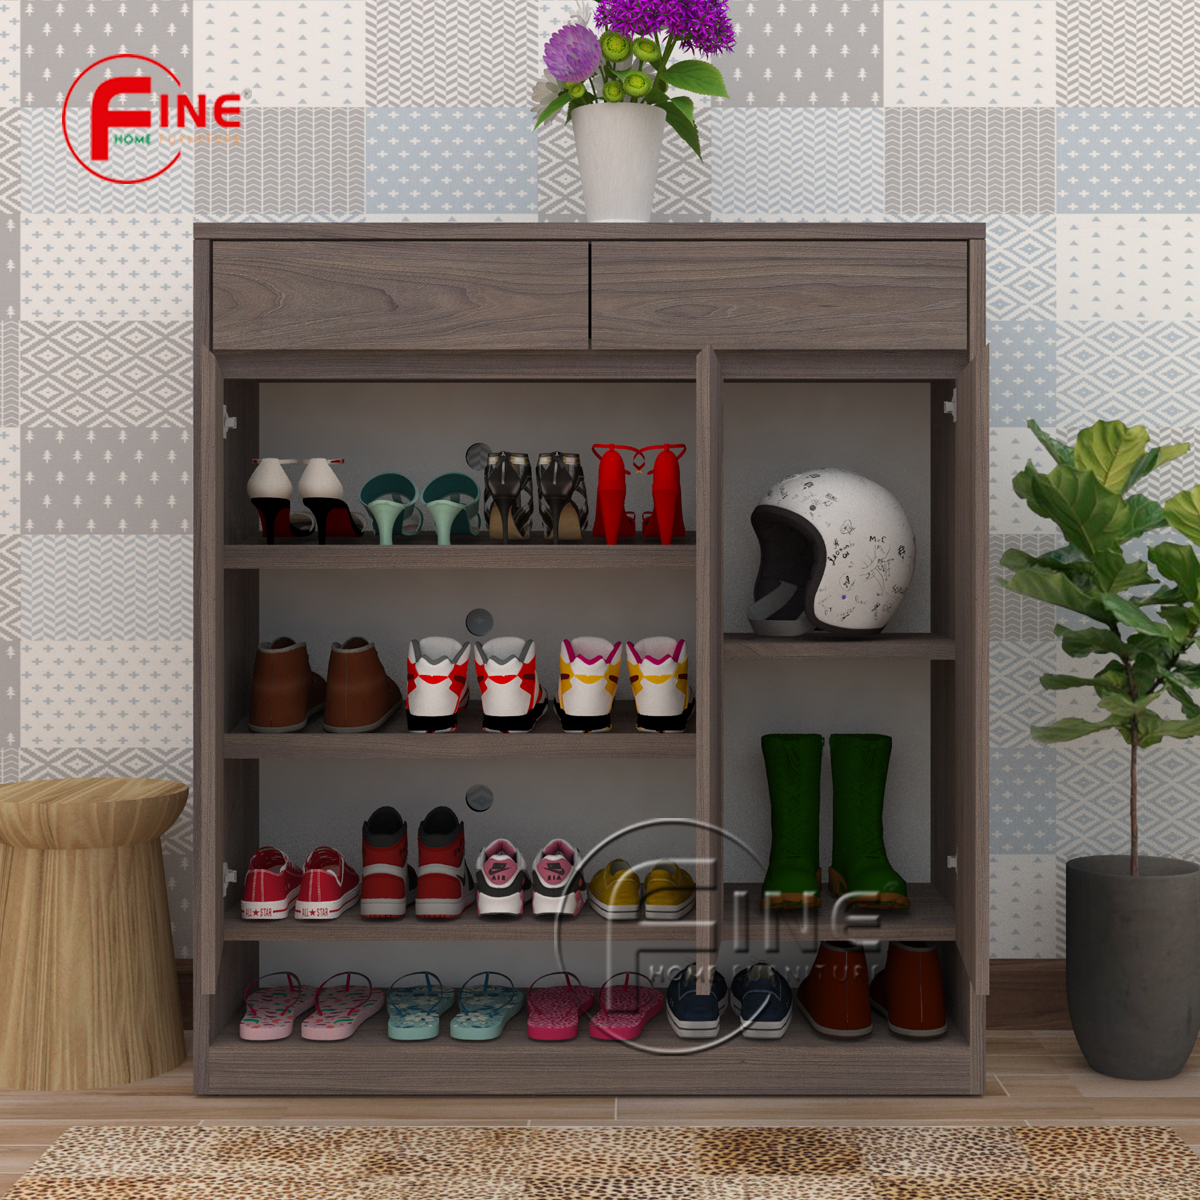 Tủ Giày Dép FINE hiện đại sang trọng phong cách thời trang FTG020 phù hợp cho Căn Hộ, Nhà Phố